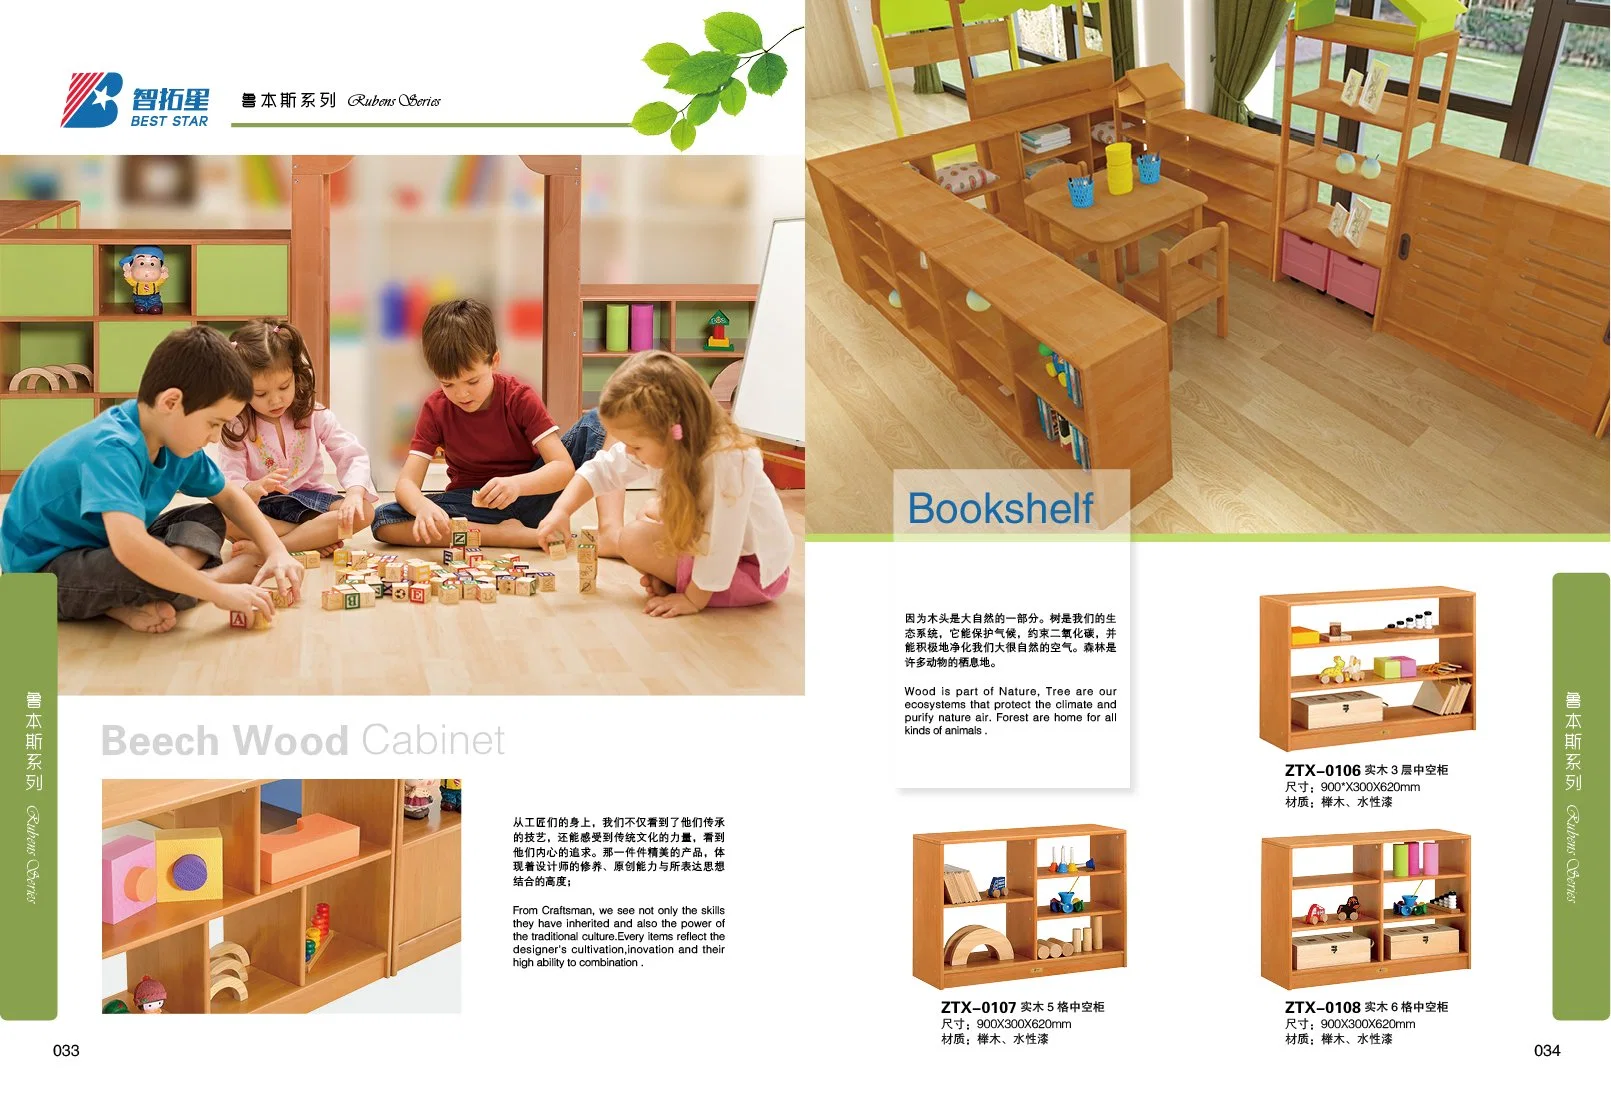 La habitación del bebé muebles, guardería de muebles, jardín de infantes y preescolares de la Guardería de muebles, mobiliario de aula, los niños el cuidado de muebles, muebles de madera para niños